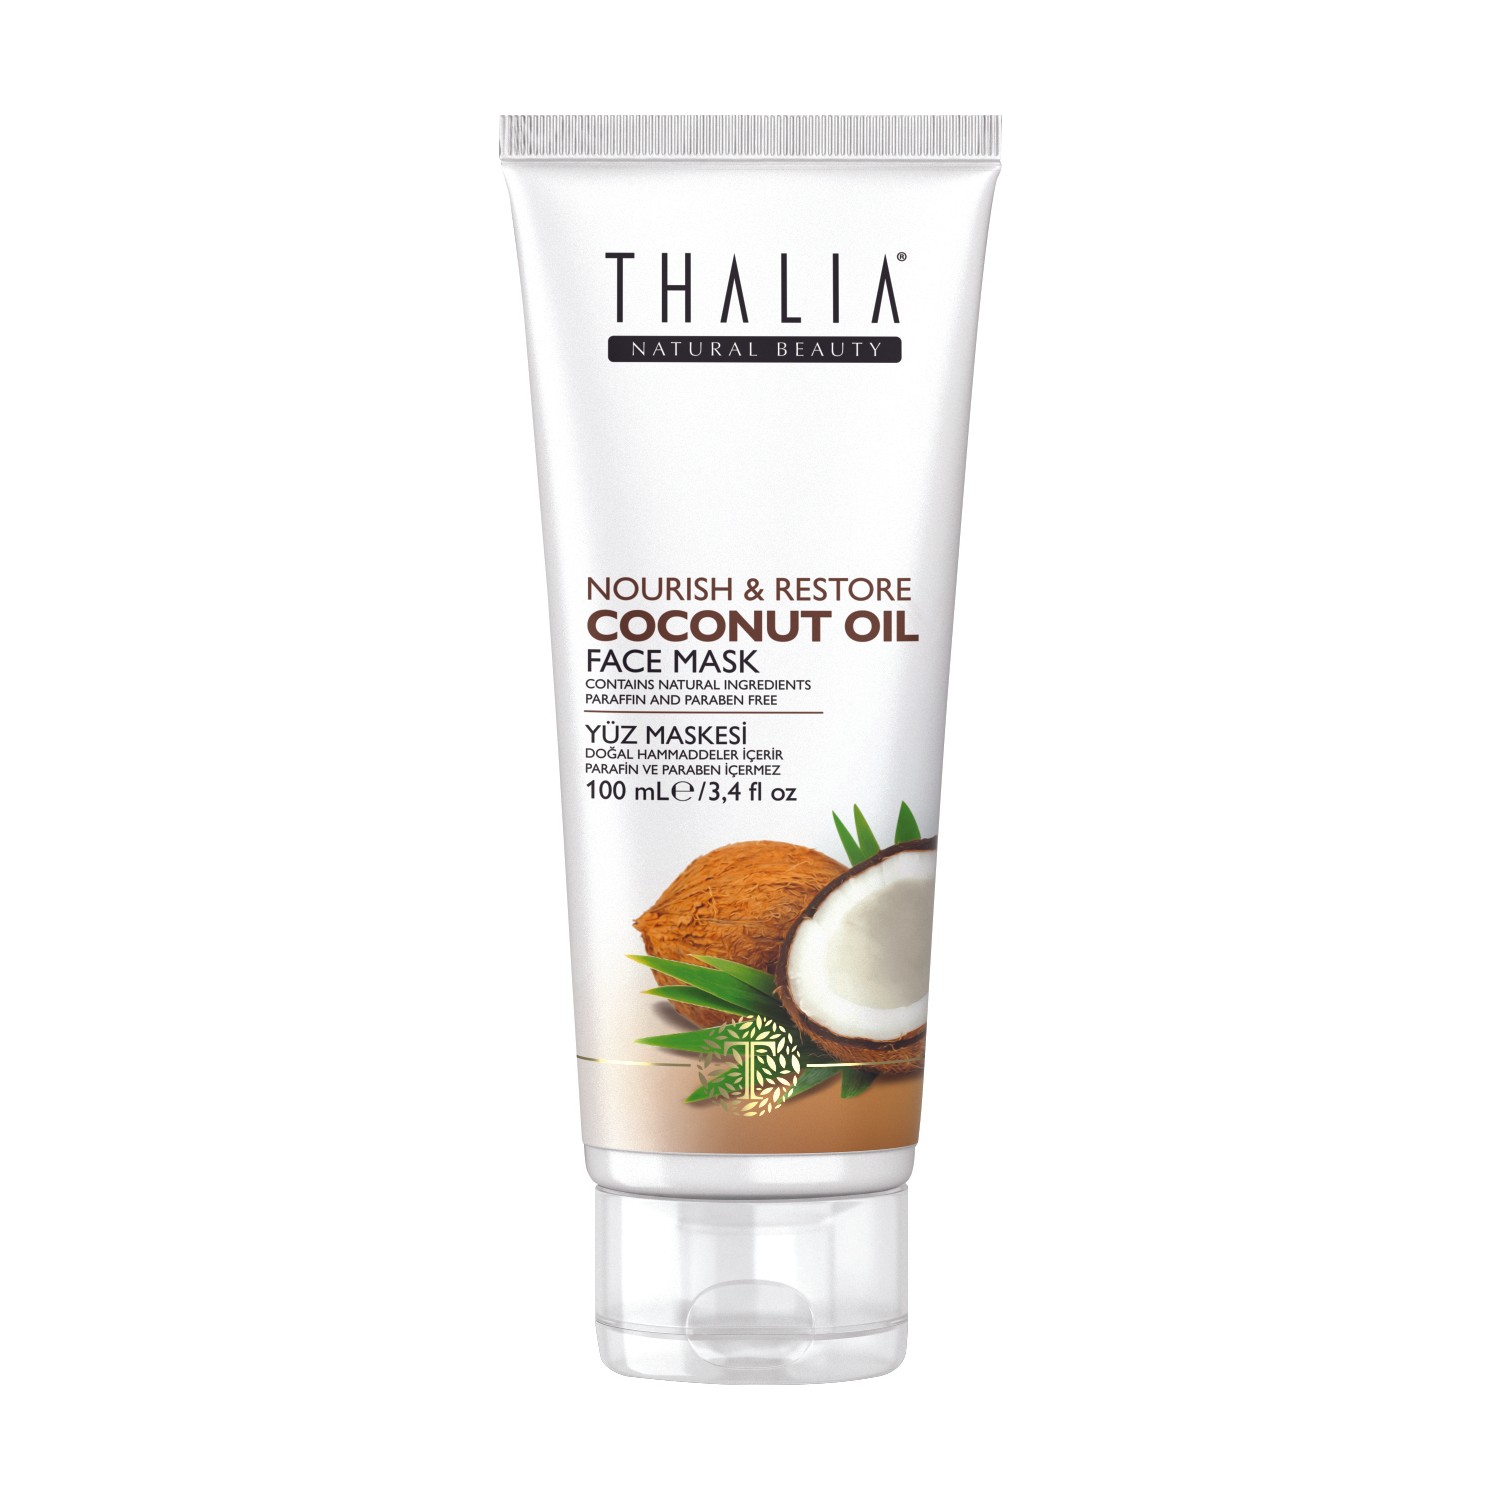 цена Маска для лица Thalia с кокосовым маслом, 100 мл